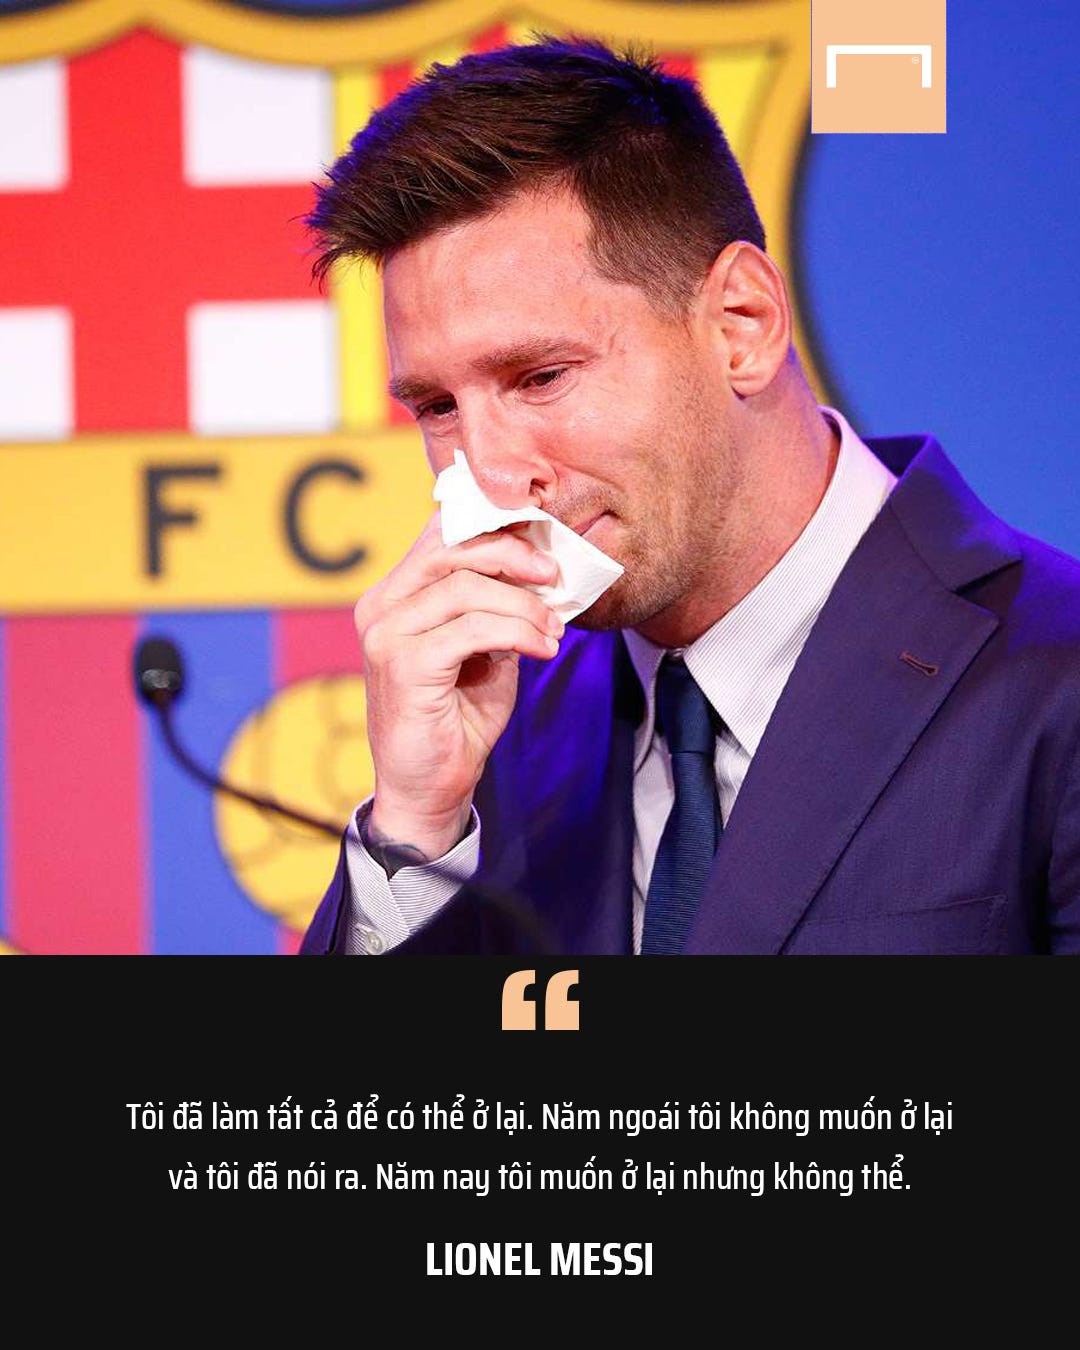 Lionel Messi quote Barcelona